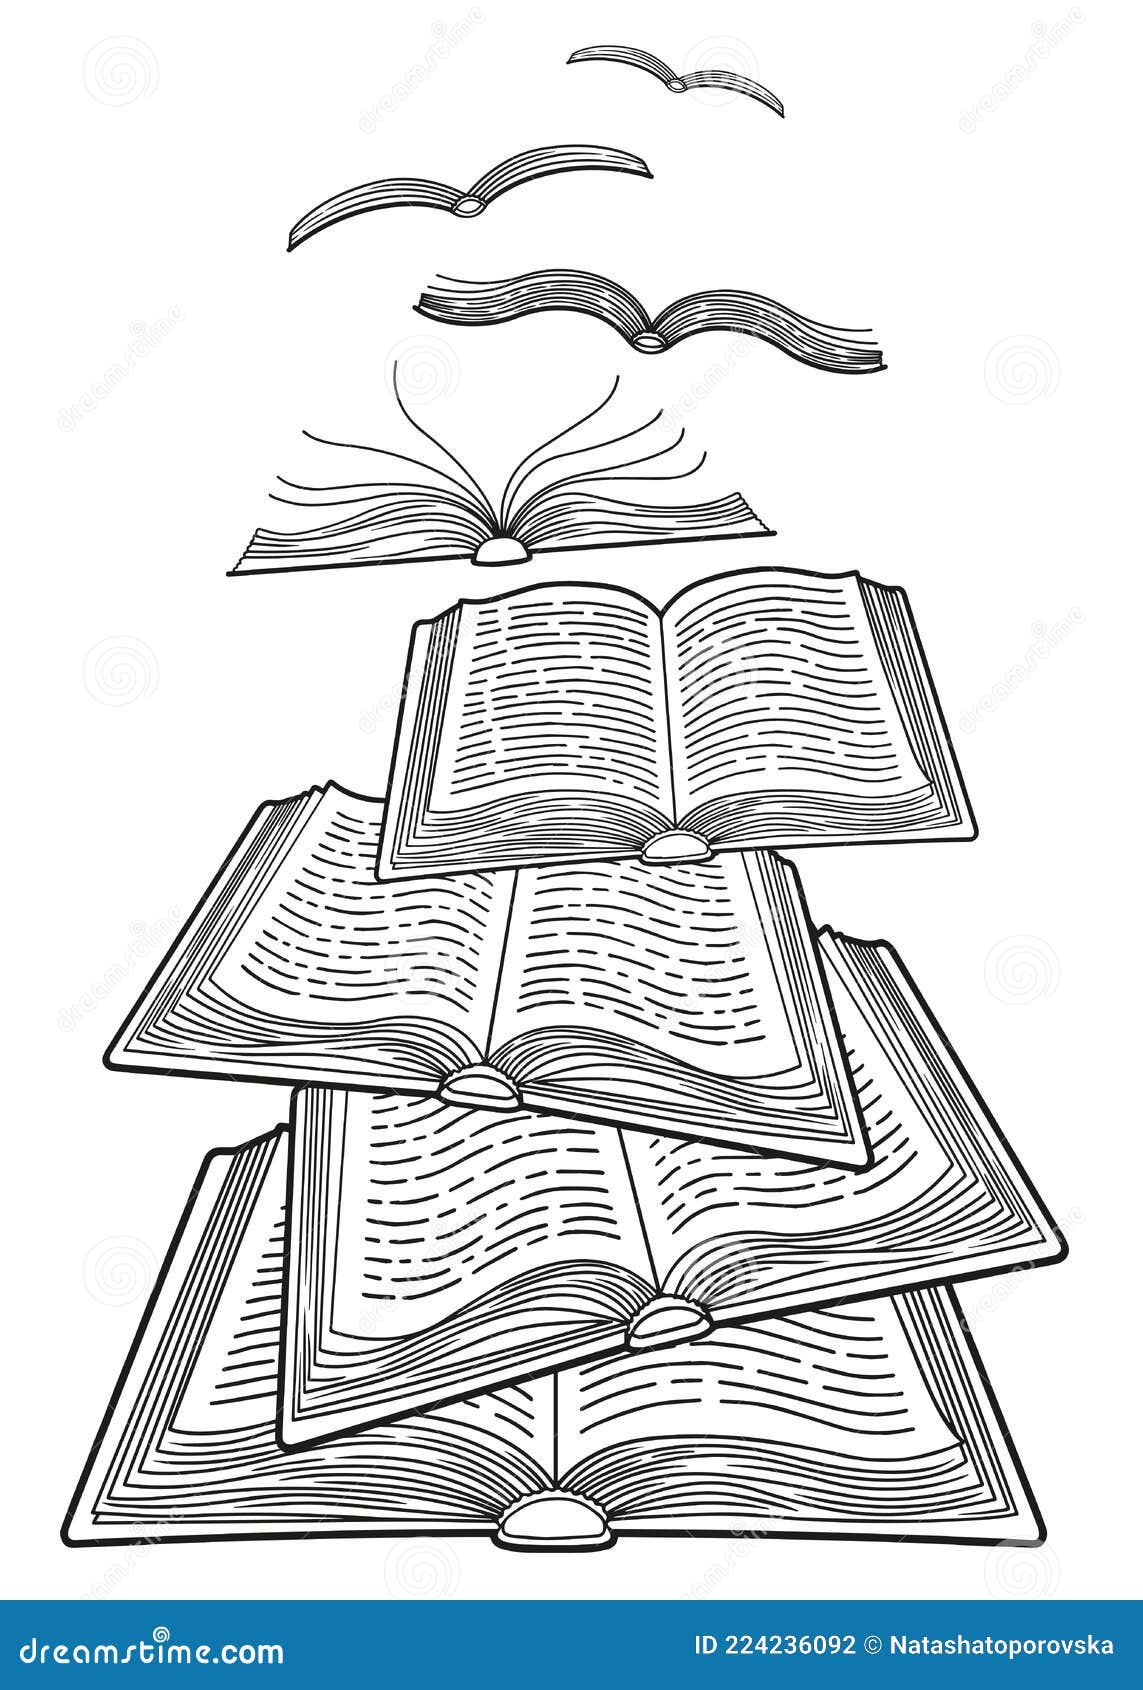 Día mundial del libro. libros abiertos aislados. doodle detallado